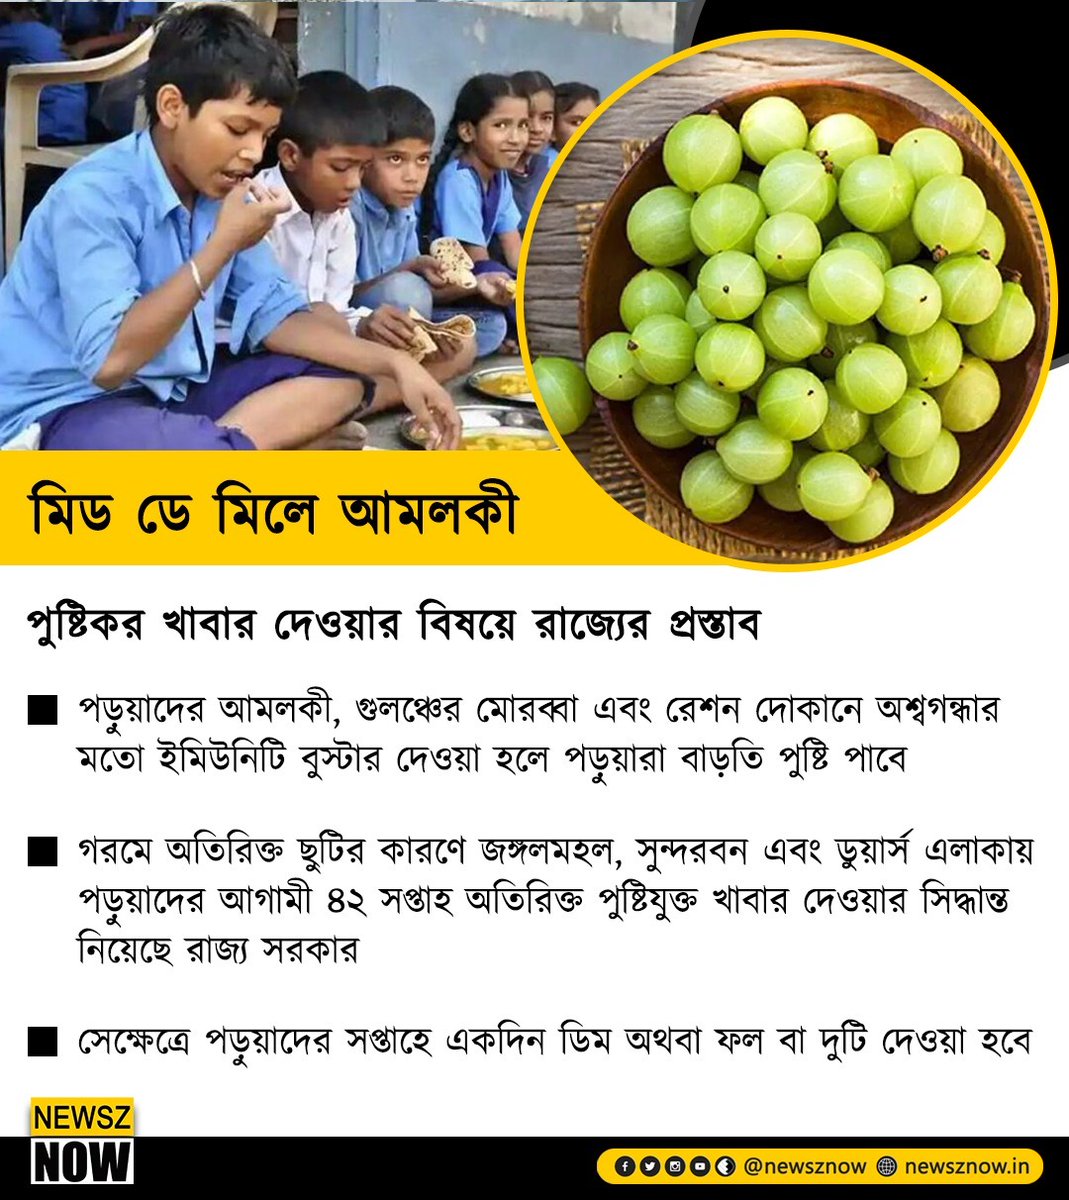 মিড ডে মিলে আমলকী দেওয়ার প্রস্তাব রাজ্যের

#Bengal govt has proposed providing #gooseberry for mid-day meals 

#amla #MidDayMeals #PMPoshan #NewszNow